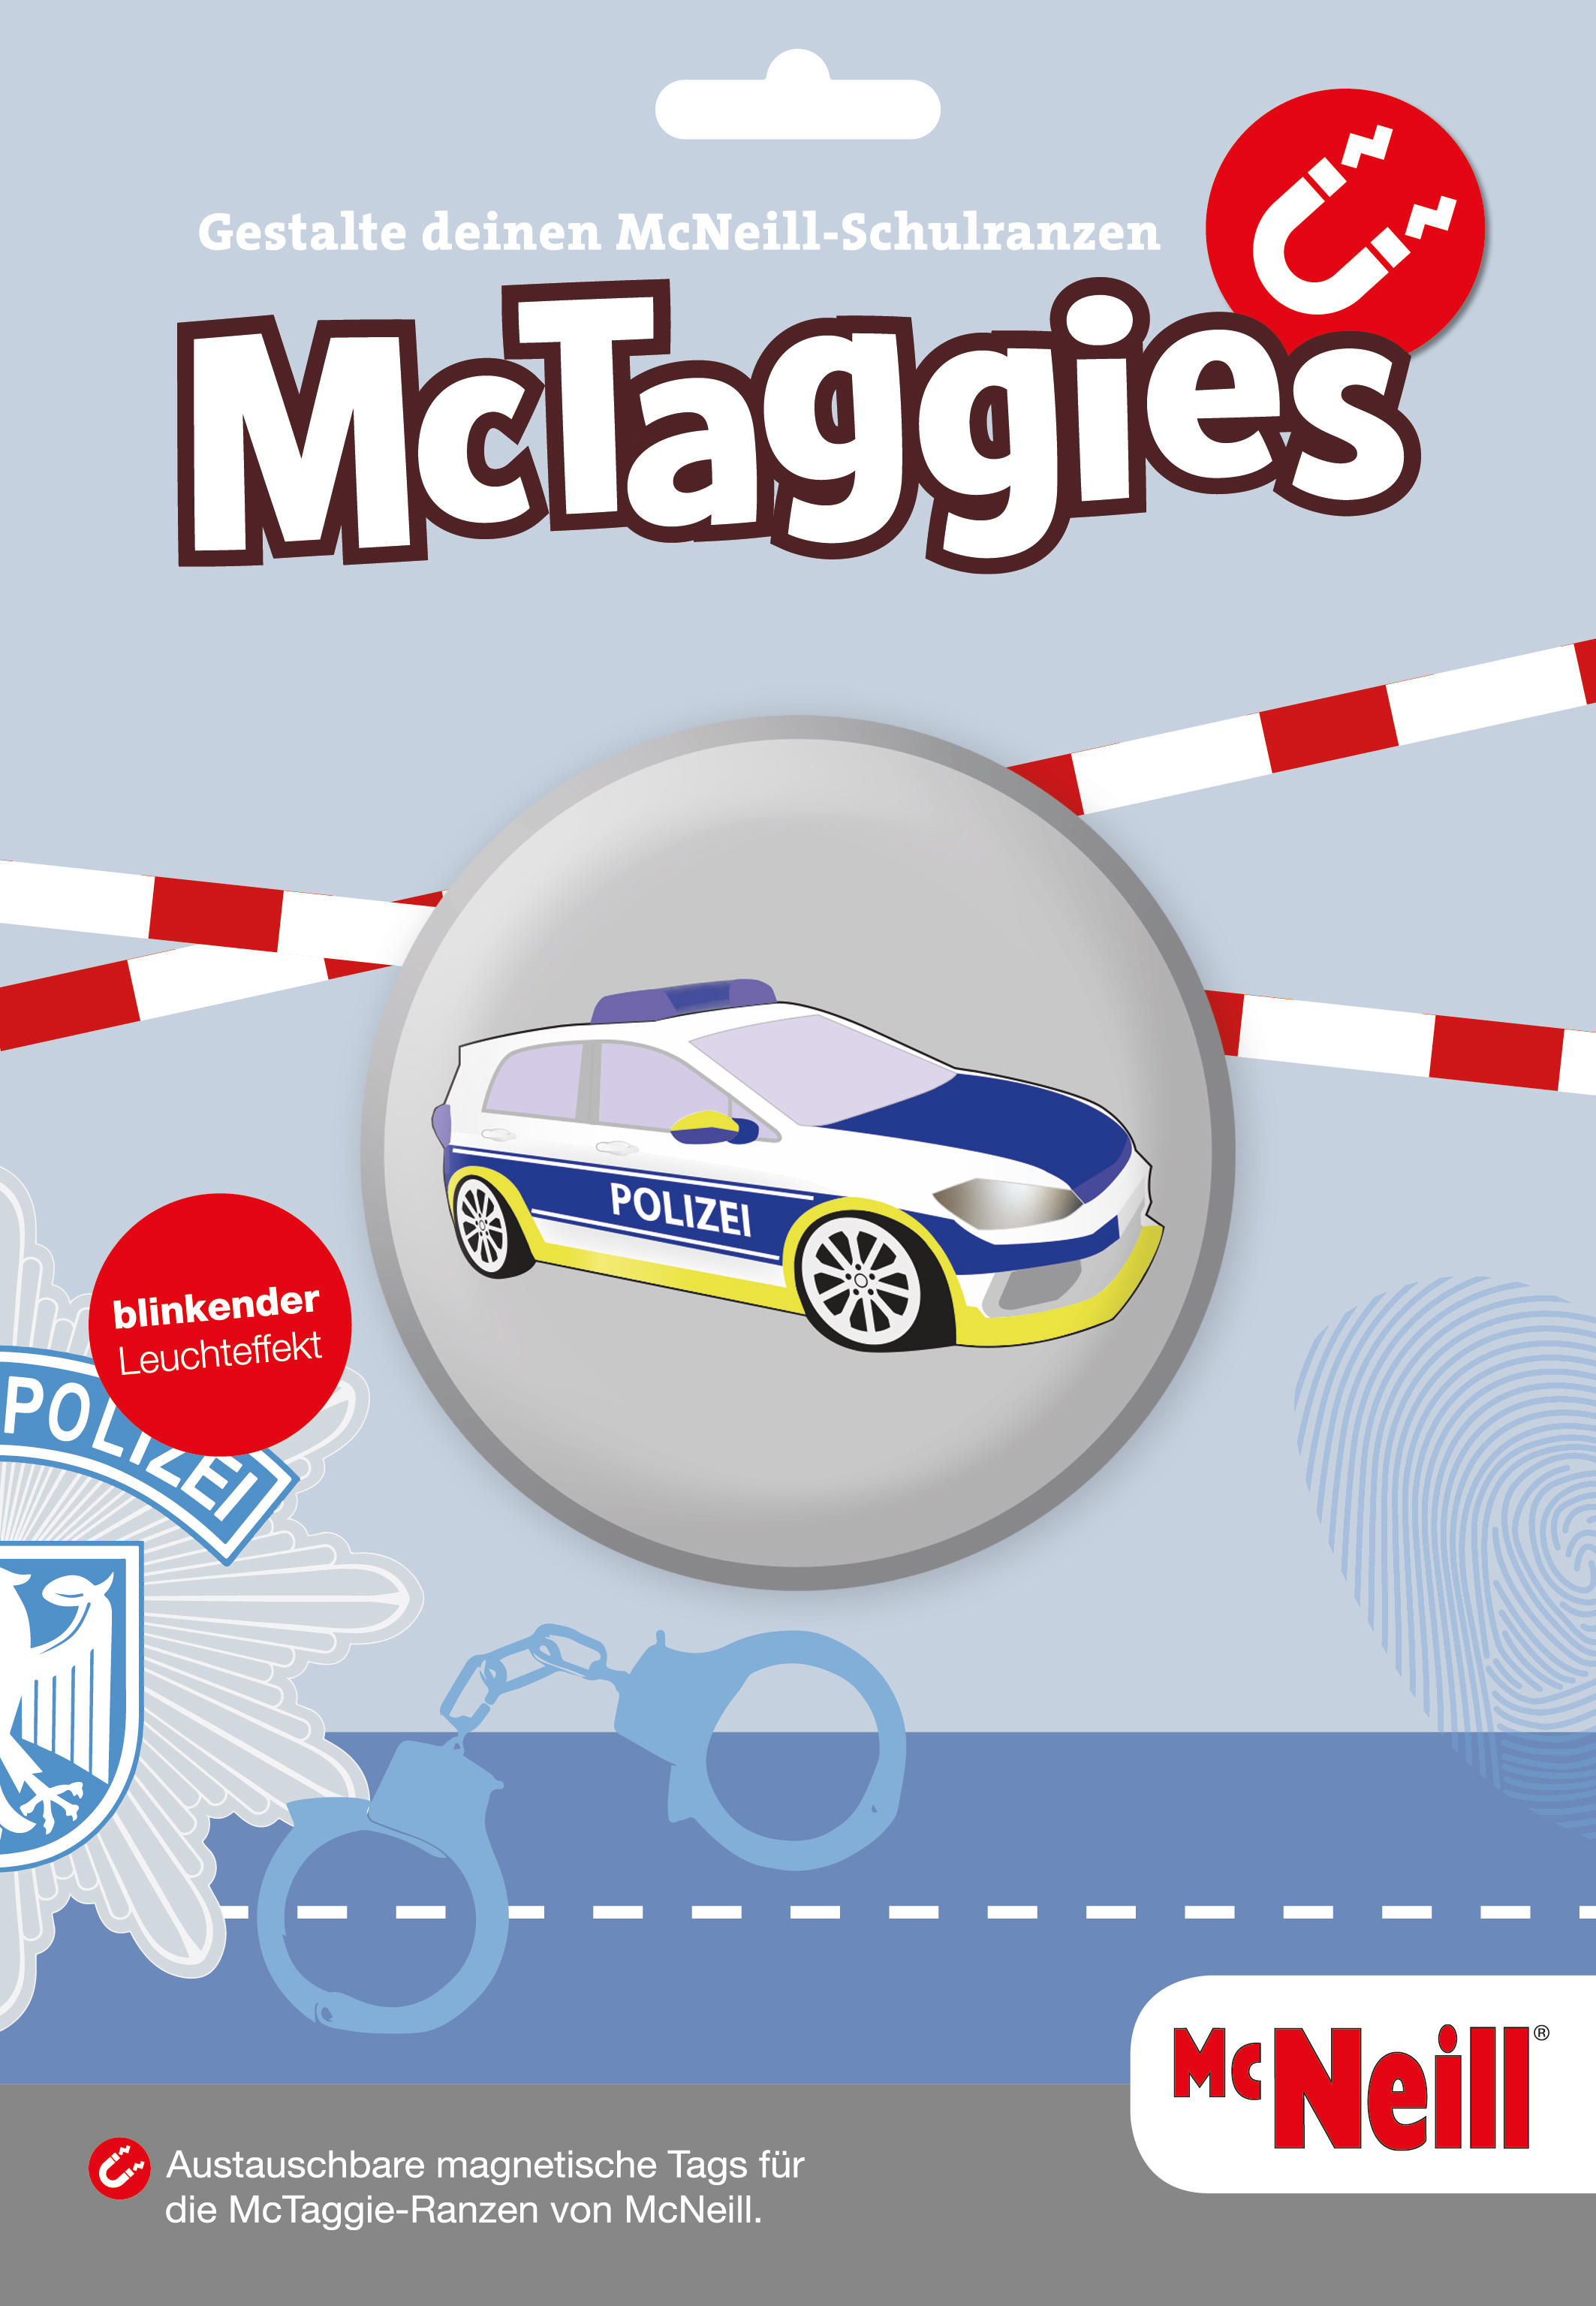 McNeill 'Polizei' McTaggie-Set blinkend